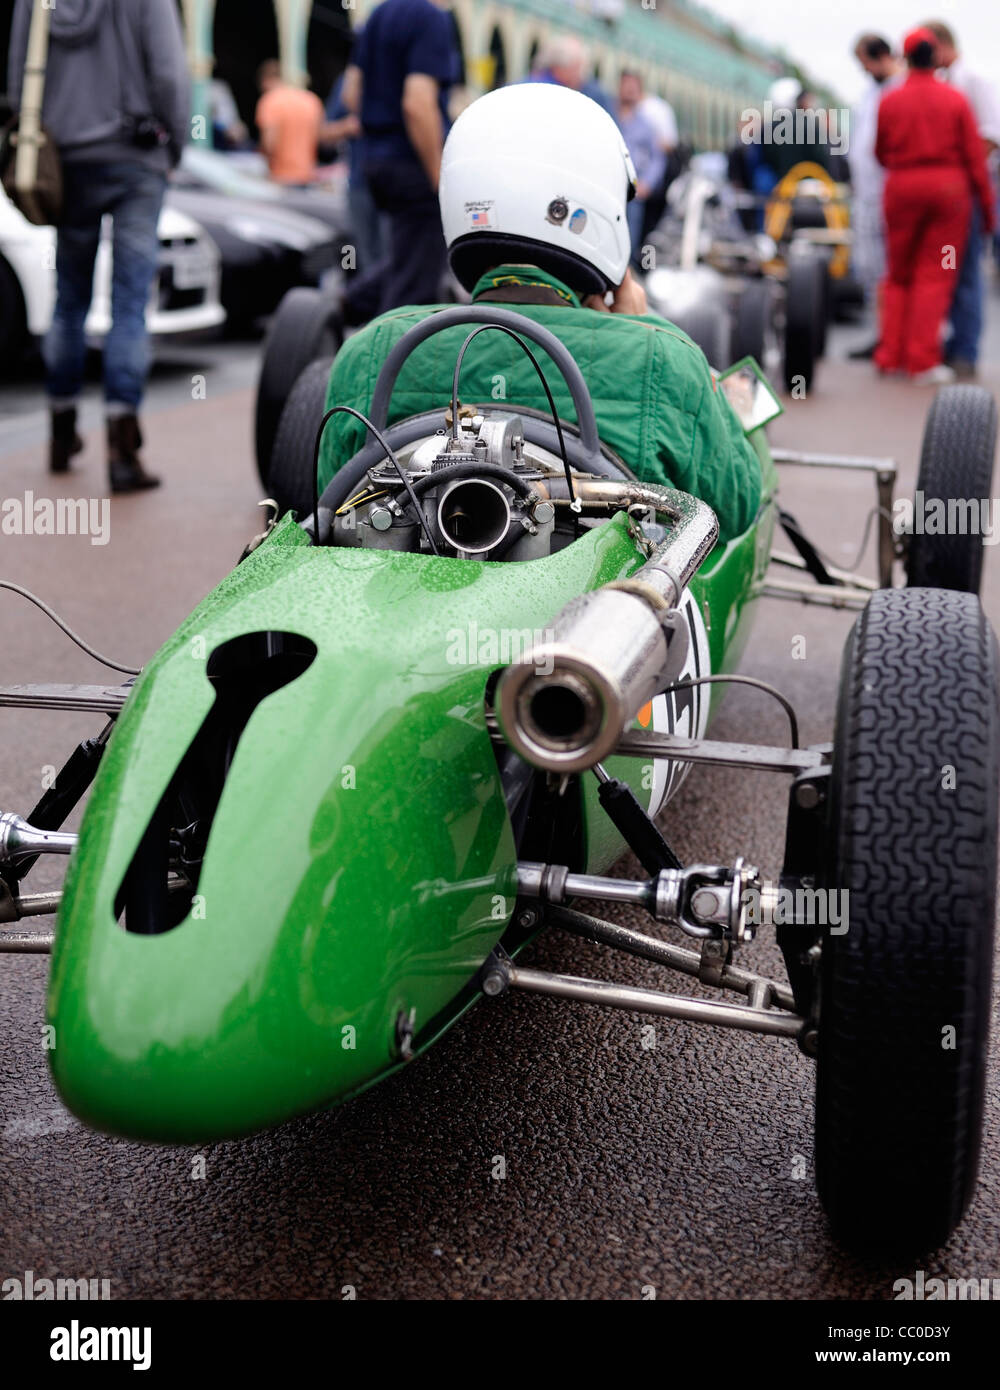 Classico verde auto racing in attesa di inizio gara Foto Stock